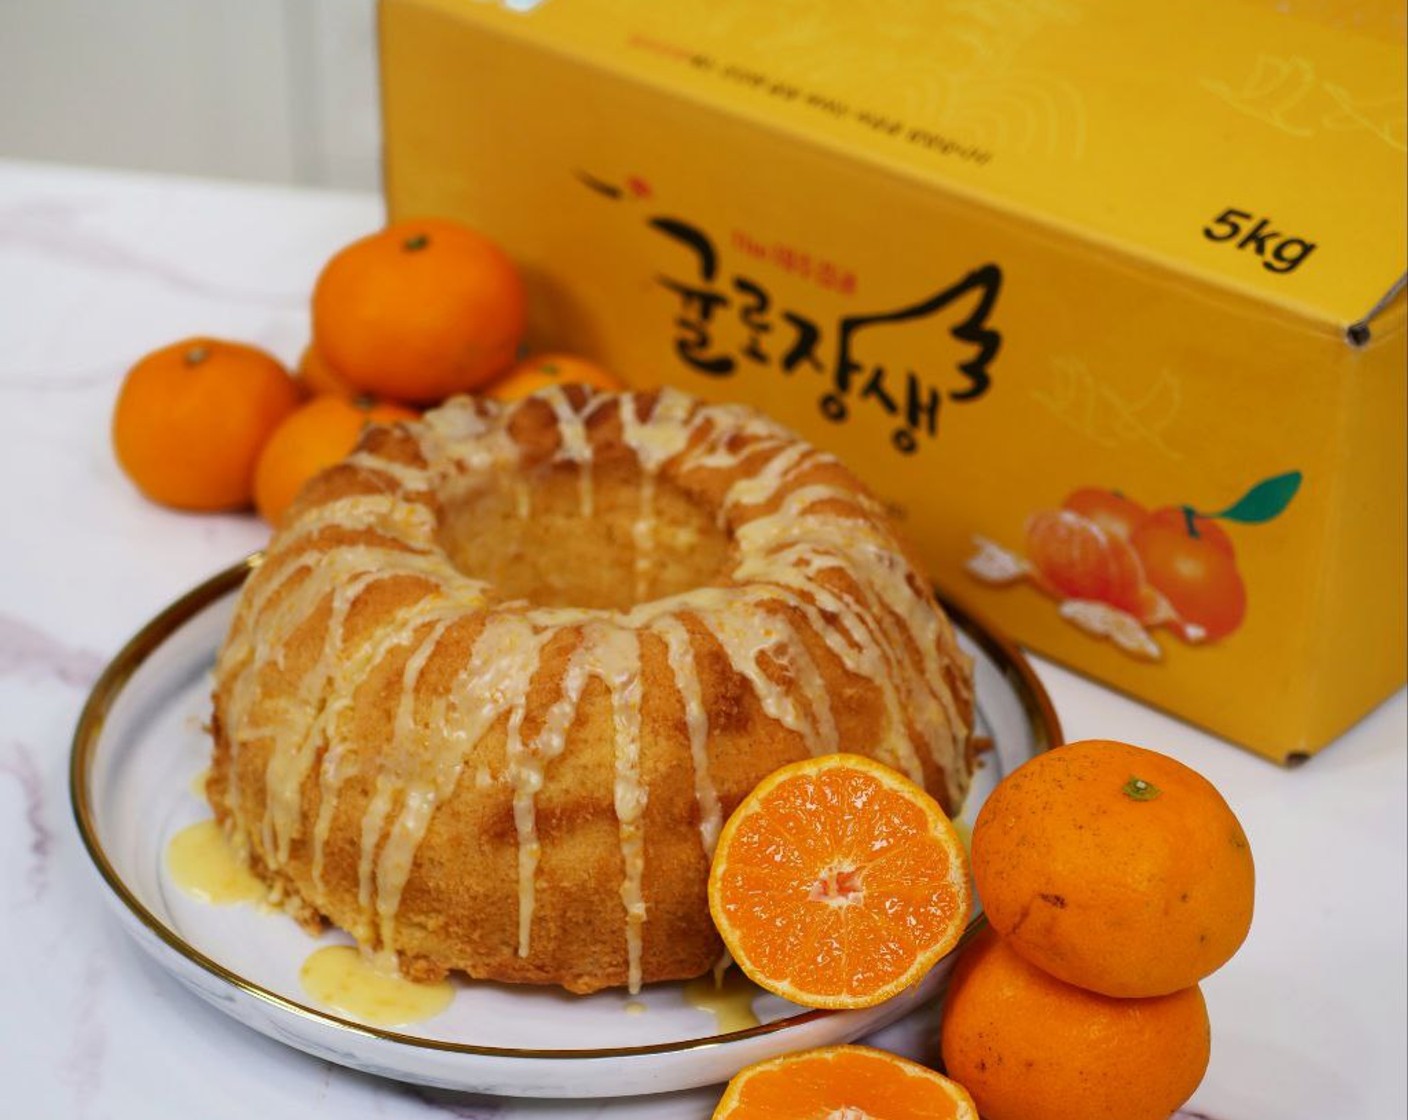 Jeju Mandarin Orange Bundt Cake